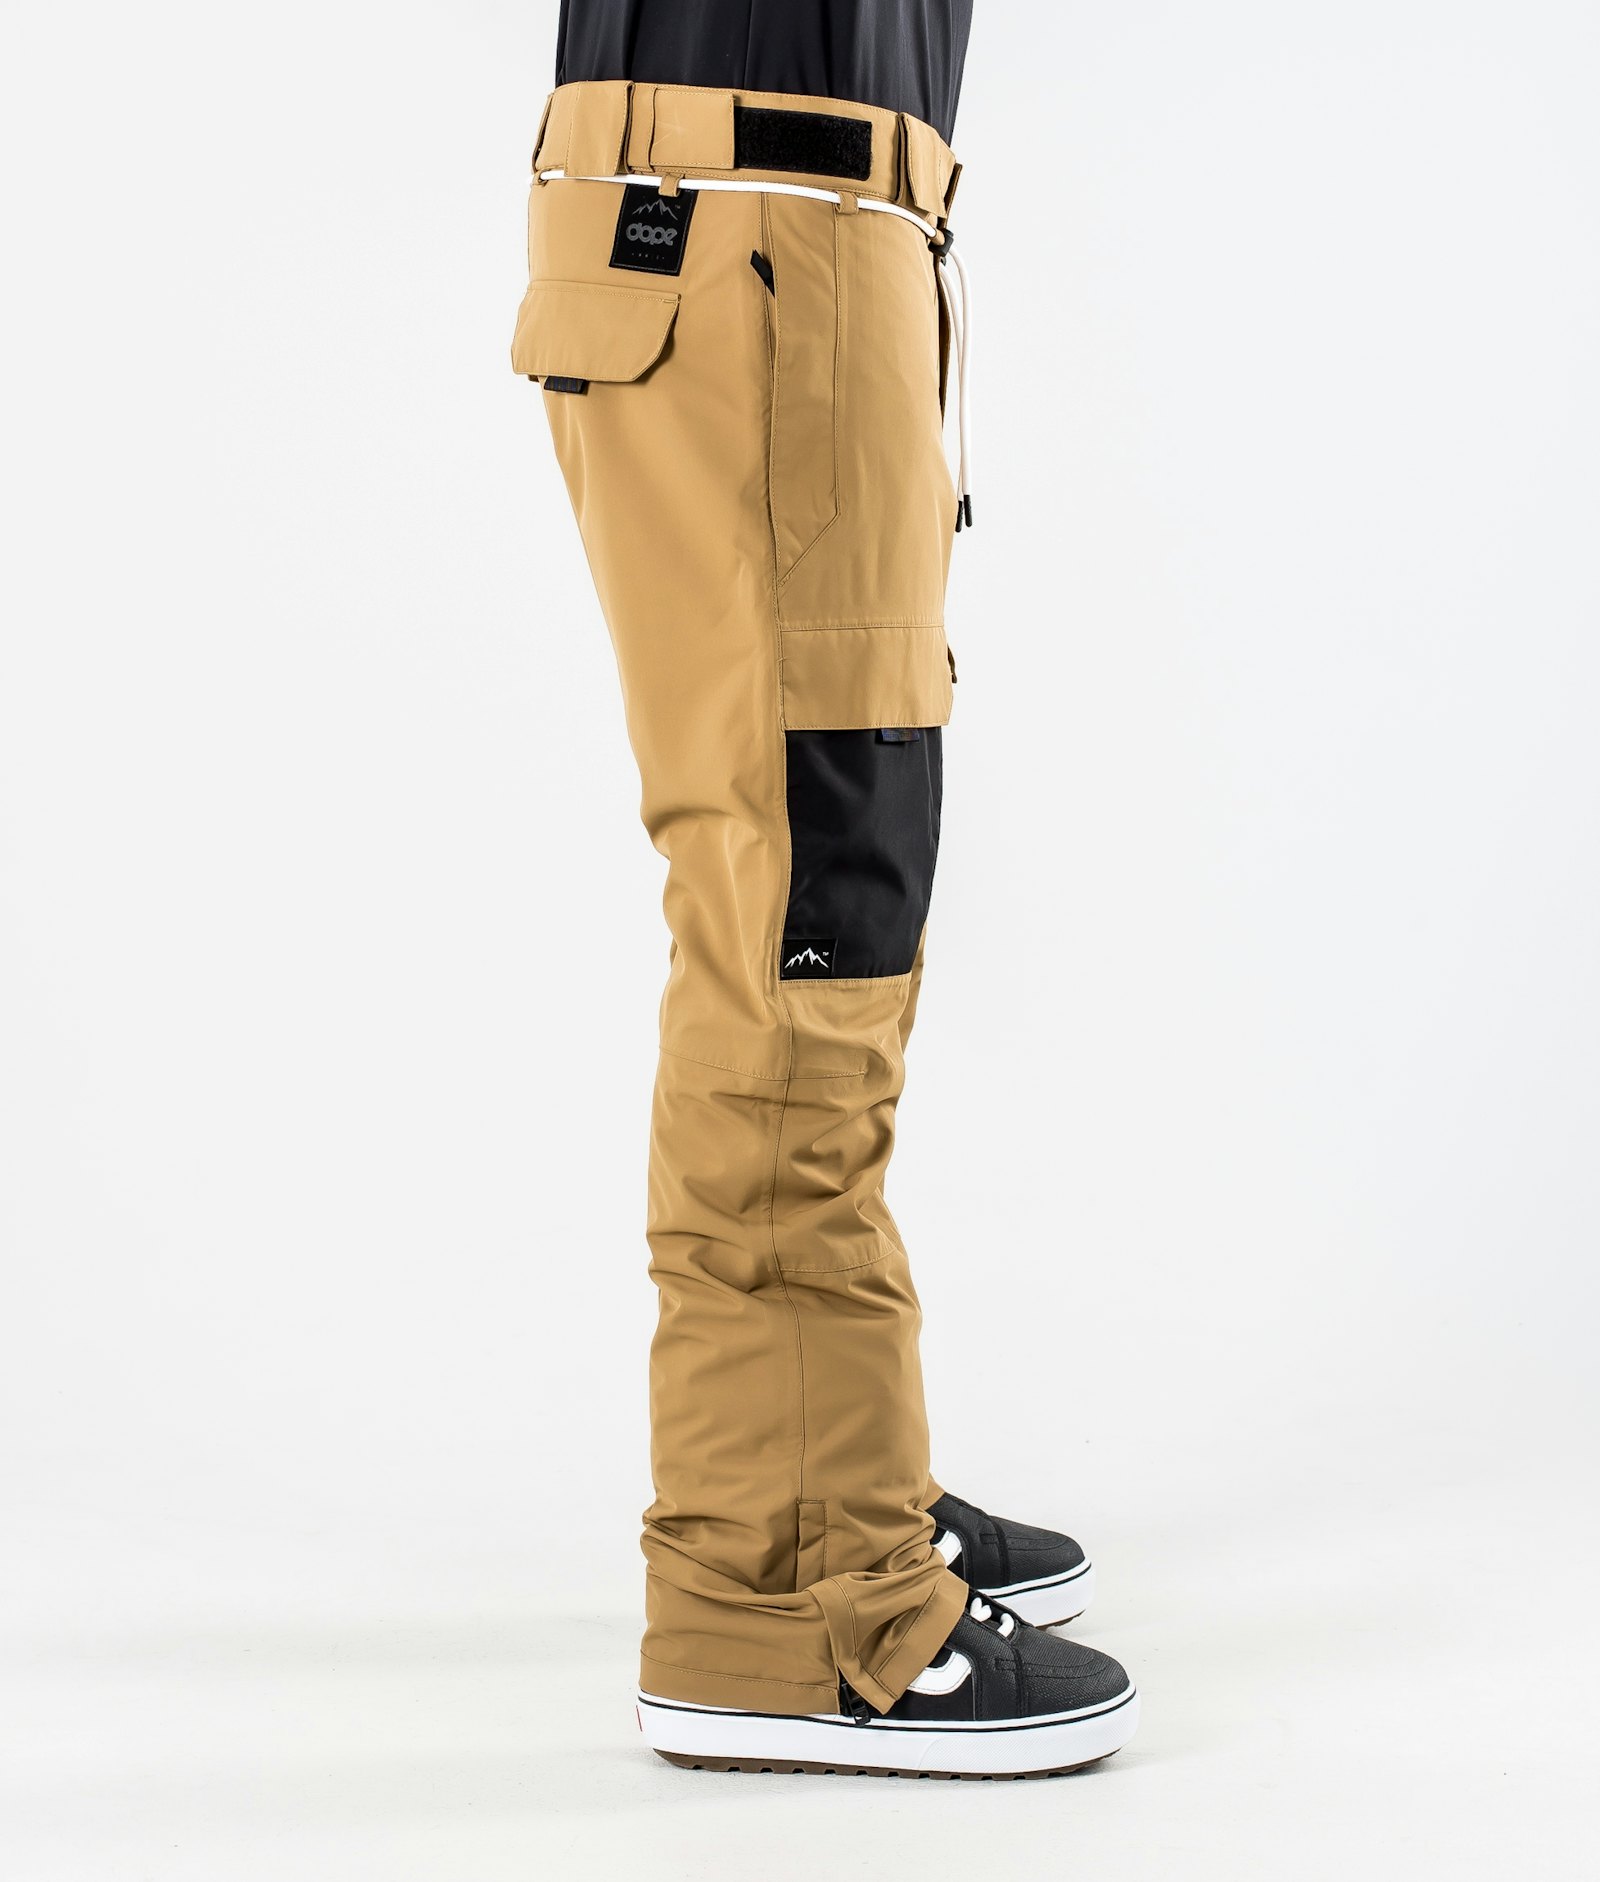 Poise Pantalon de Snowboard Homme Gold/Black